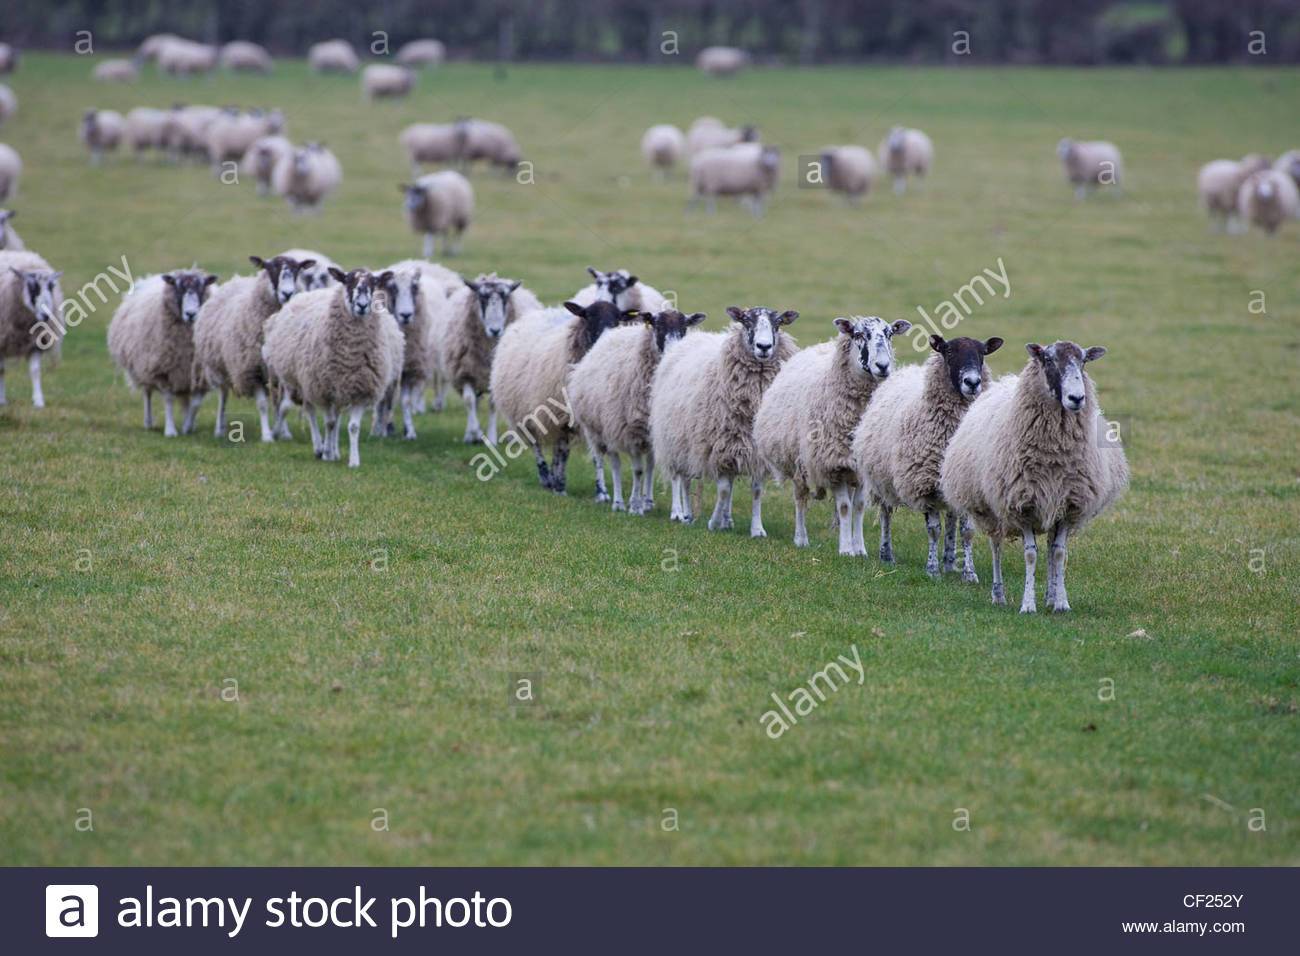 sheep-walking-in-line-CF252Y.jpg